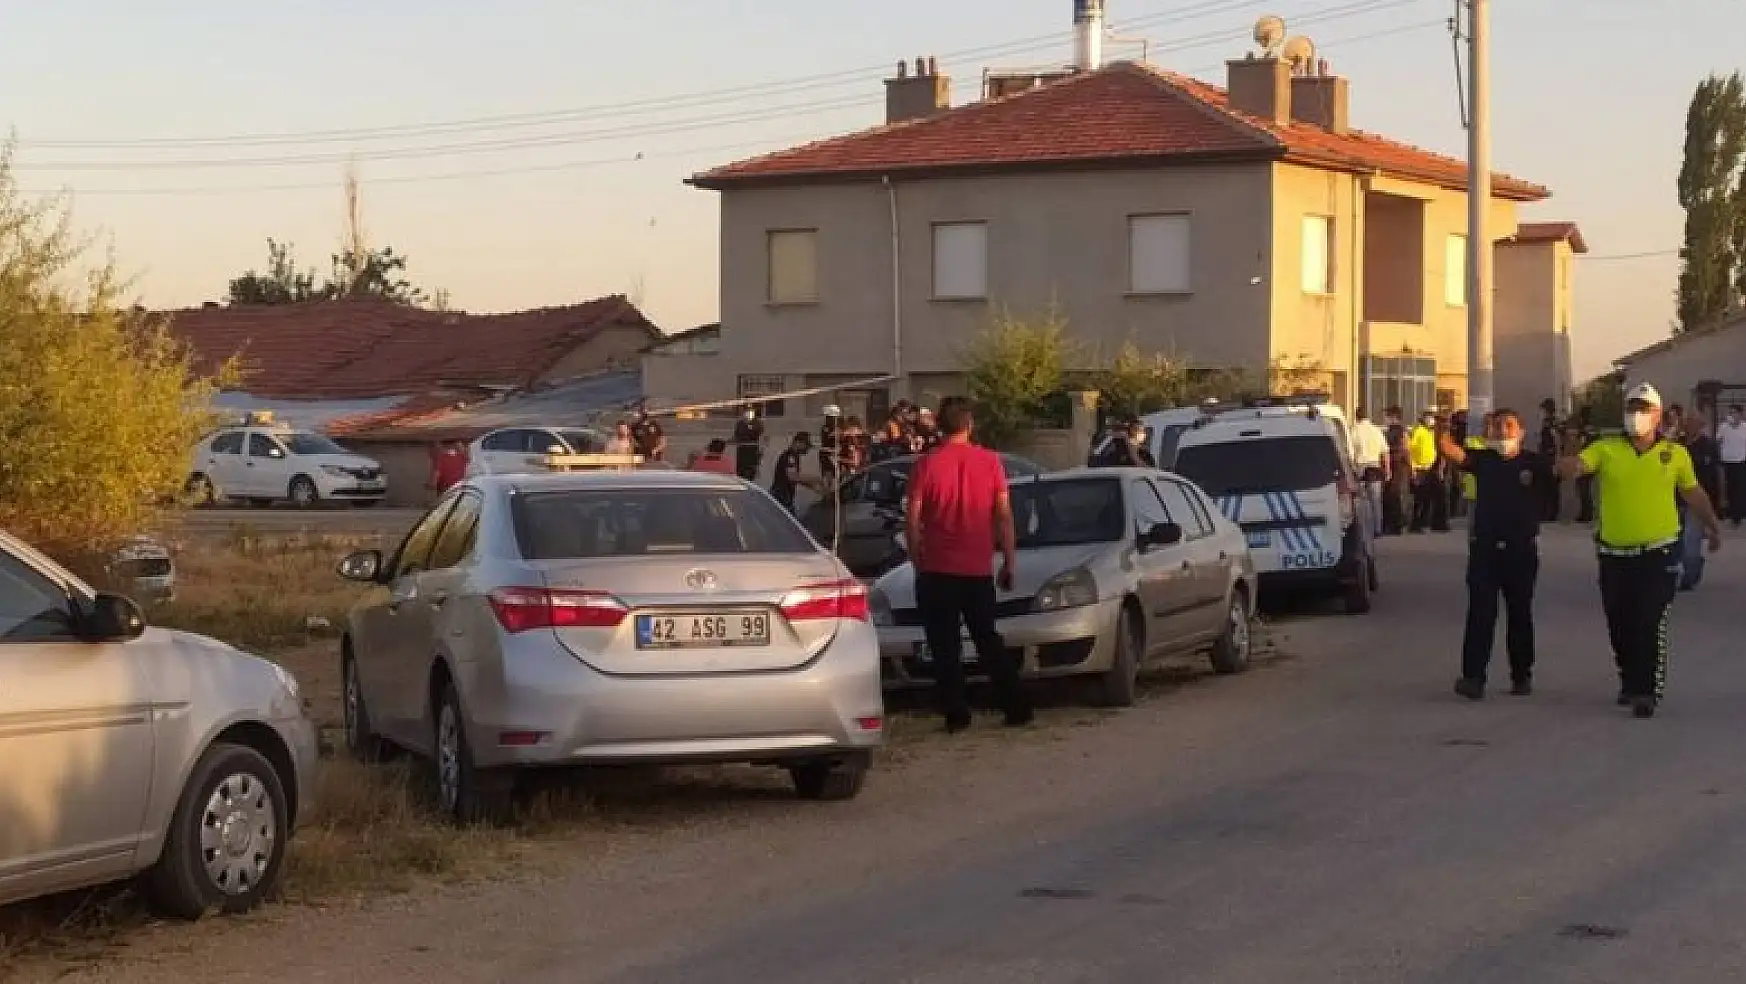 Konya'da 7 kişinin öldürülmesi olayında flaş gelişme